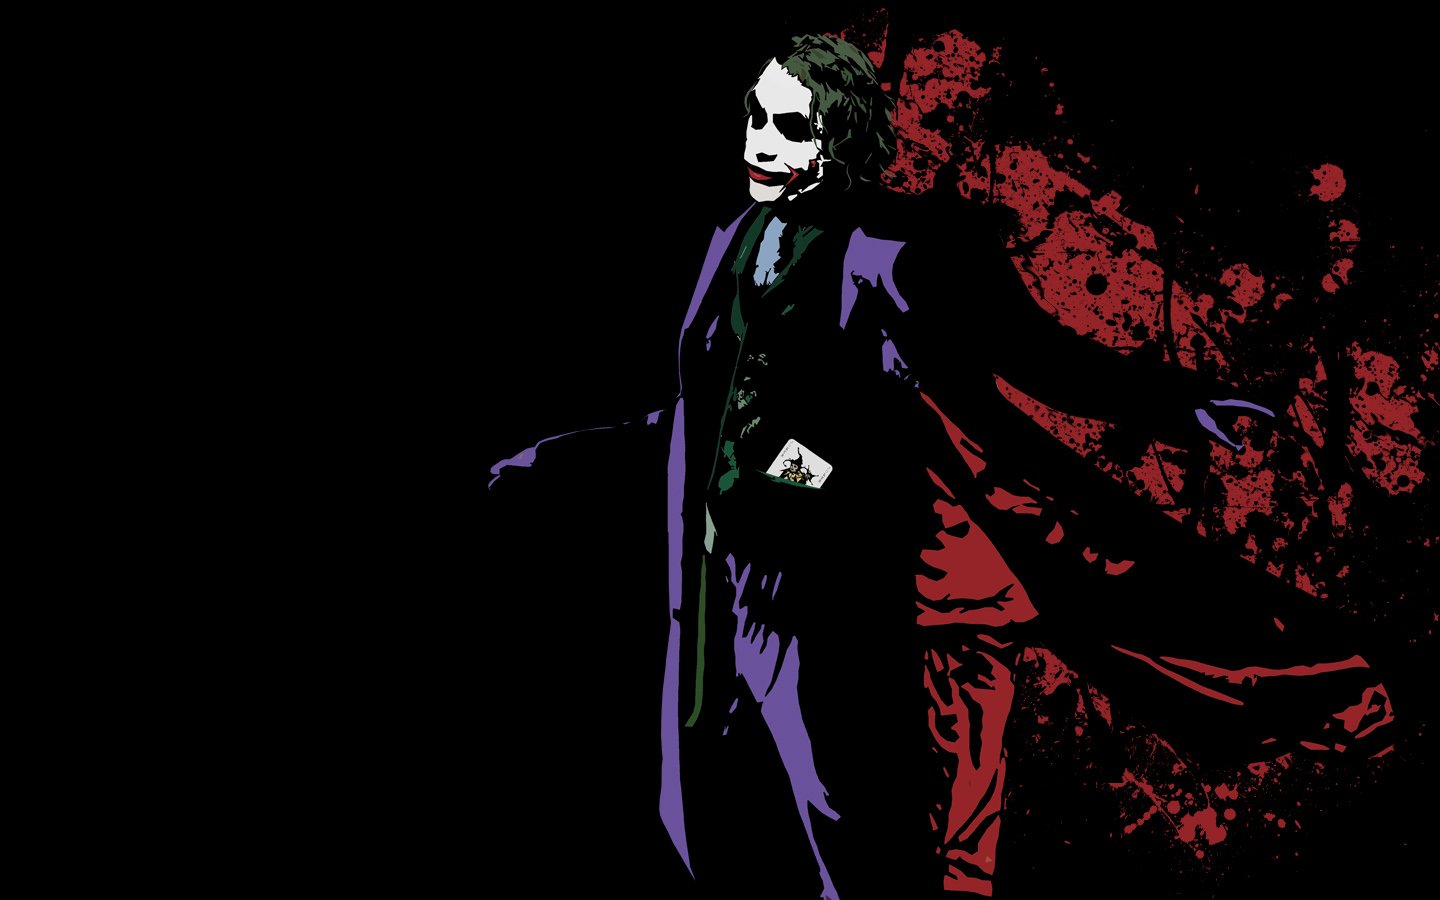 joker hd wallpaper,personaggio fittizio,supercattivo,burlone,batman,illustrazione